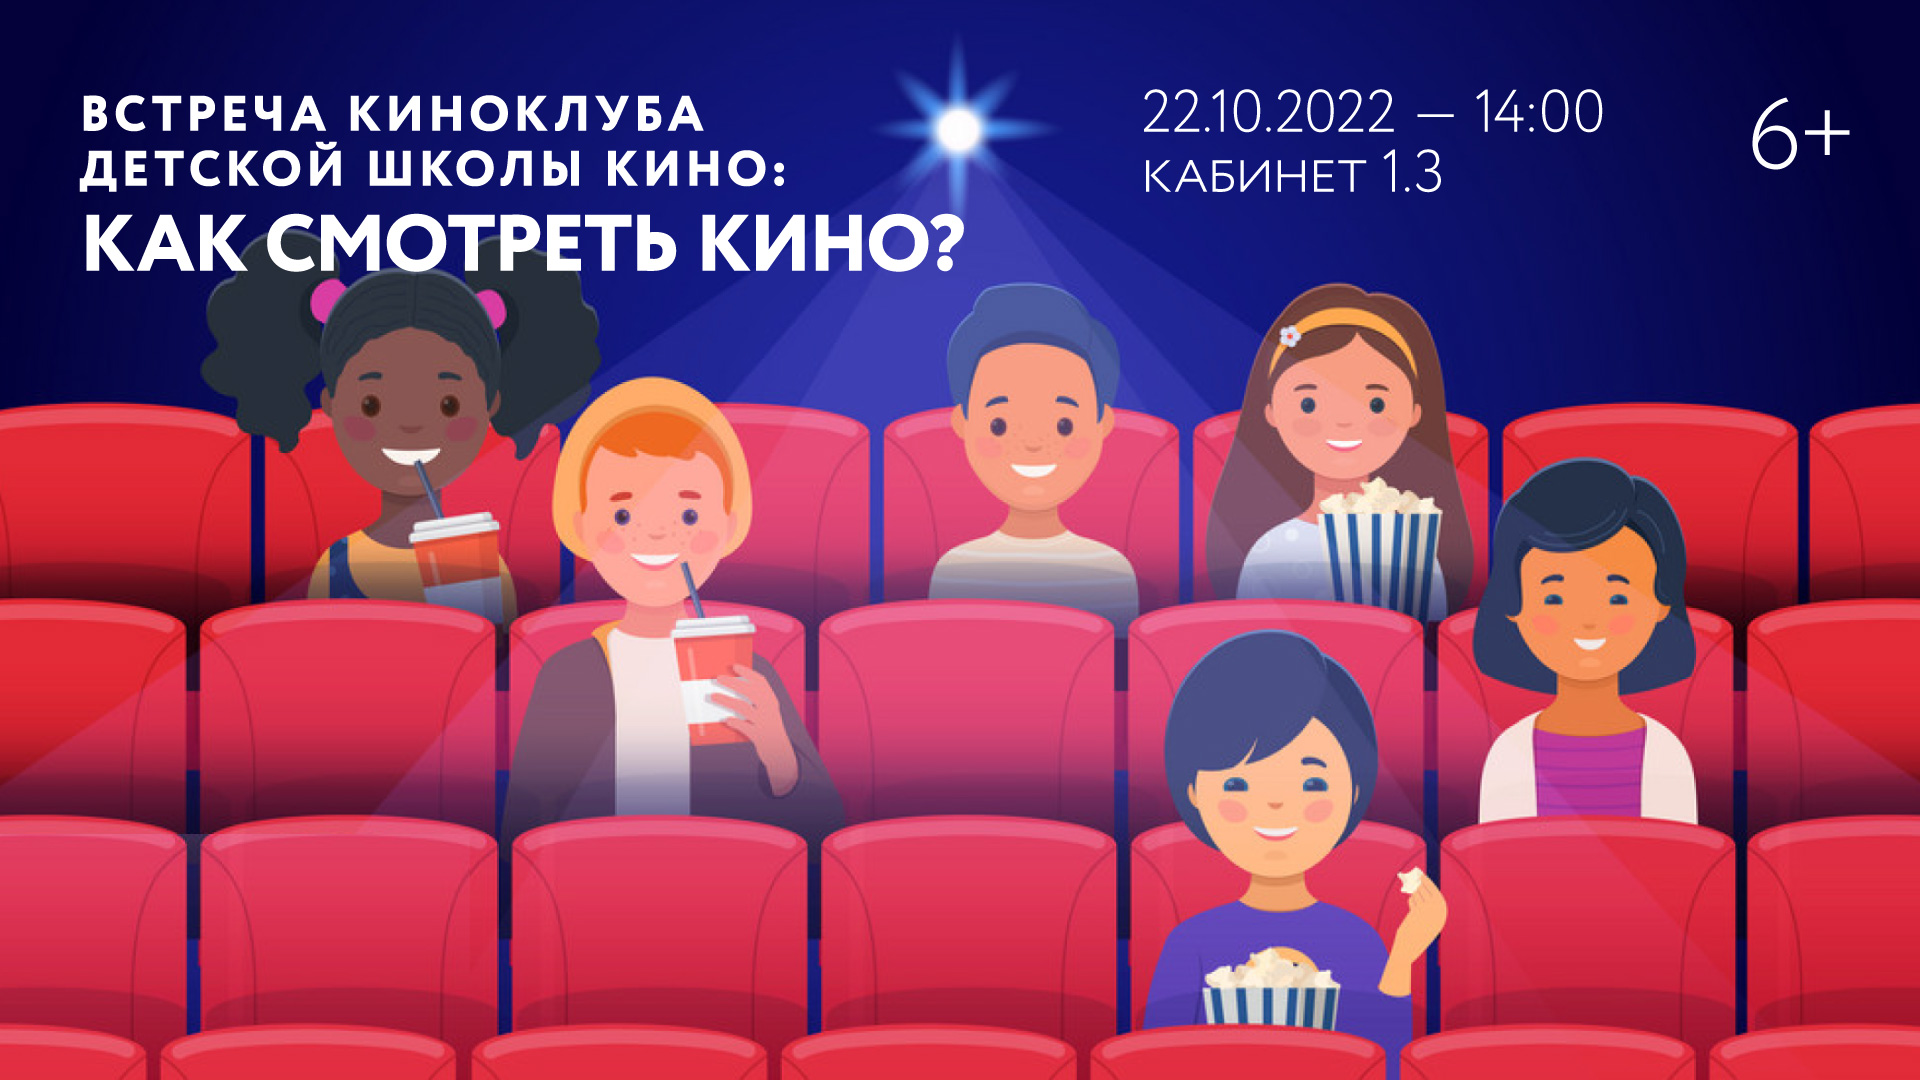 Встреча киноклуба Детской школы кино: «Как смотреть кино?»